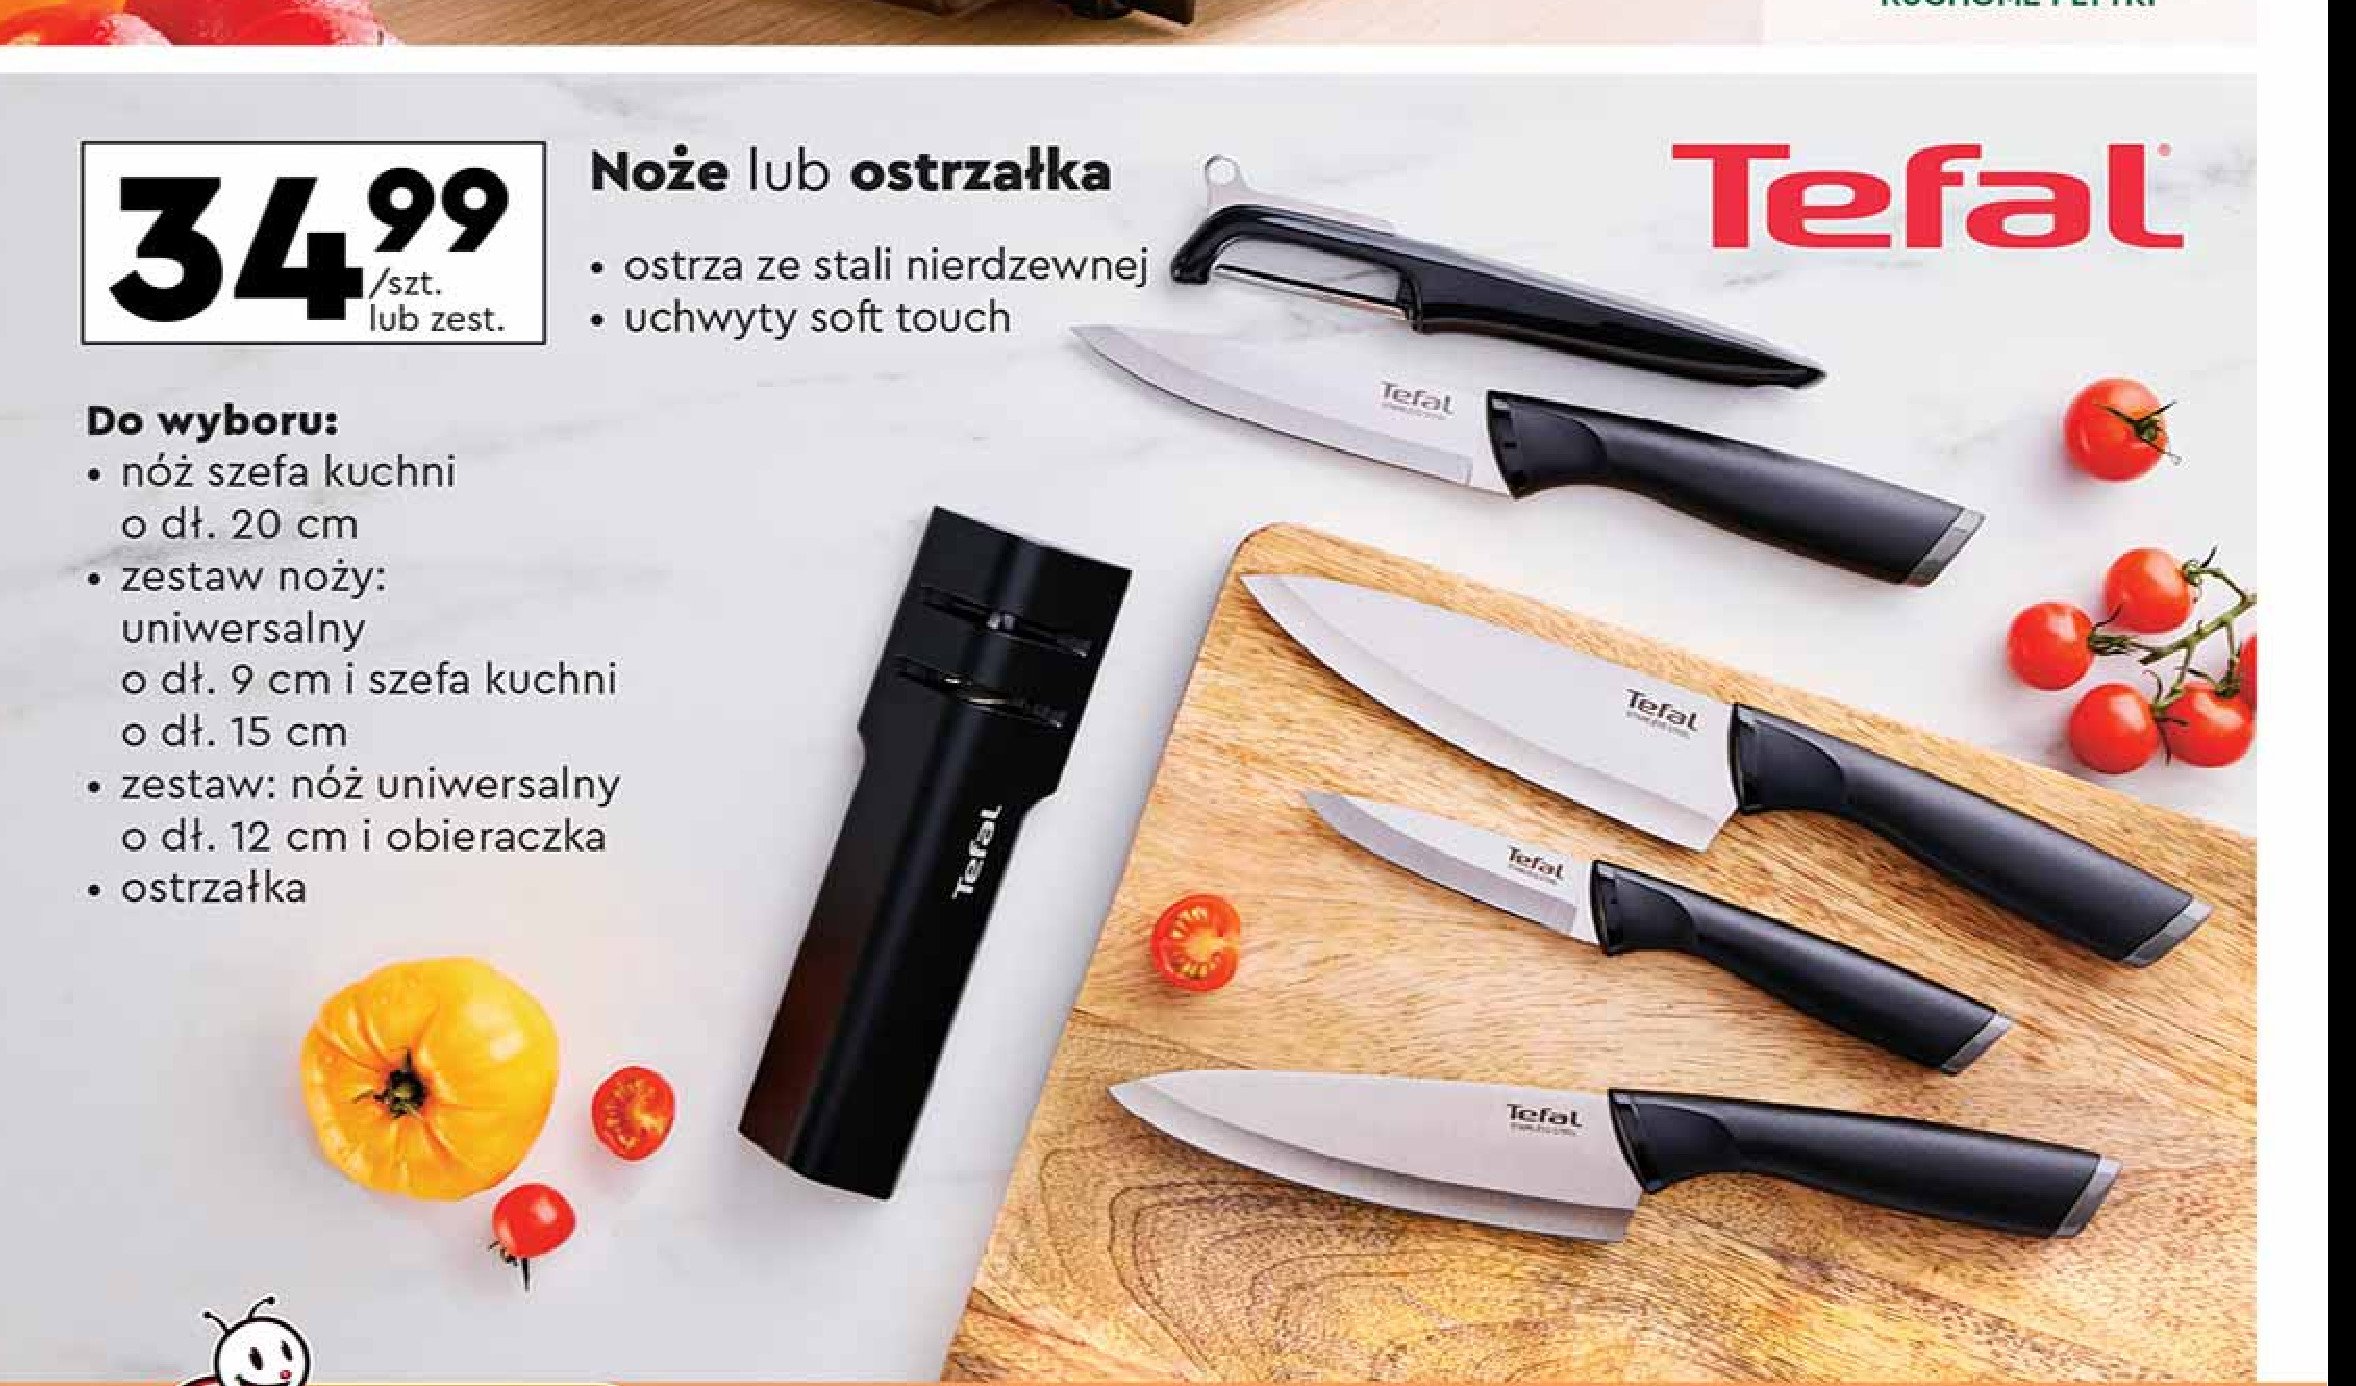 Nóż uniwersalny 9 cm + nóż szefa kuchni 15 cm Tefal promocja w Biedronka